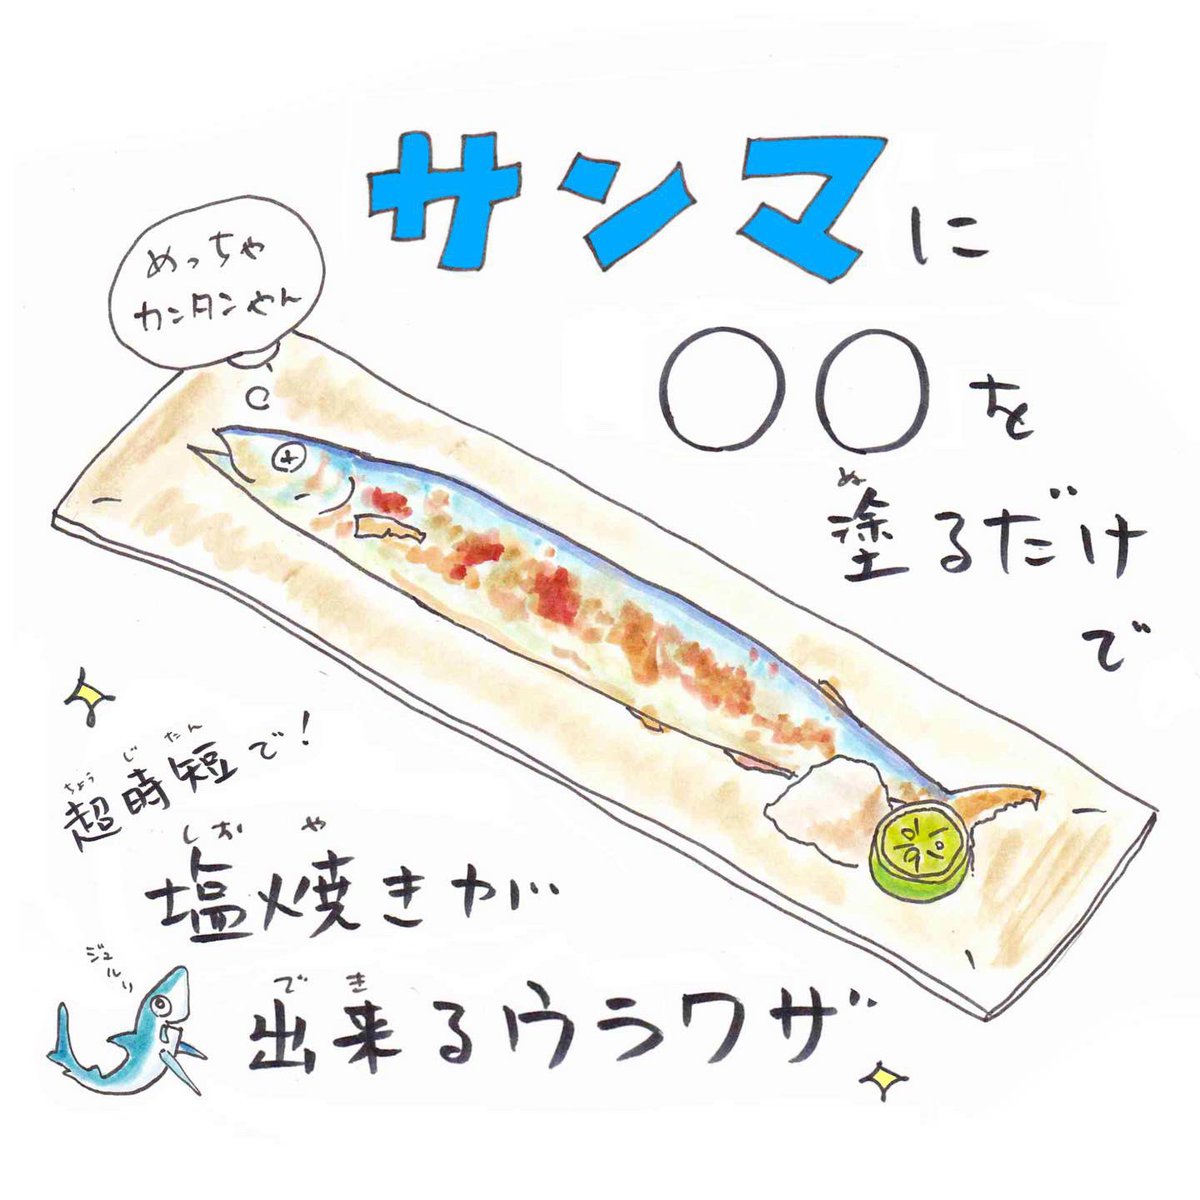 秋刀魚の塩焼きって、薄めたみりん塗るだけで超時短で焼けるの知ってた?
#秋刀魚 #時短レシピ 